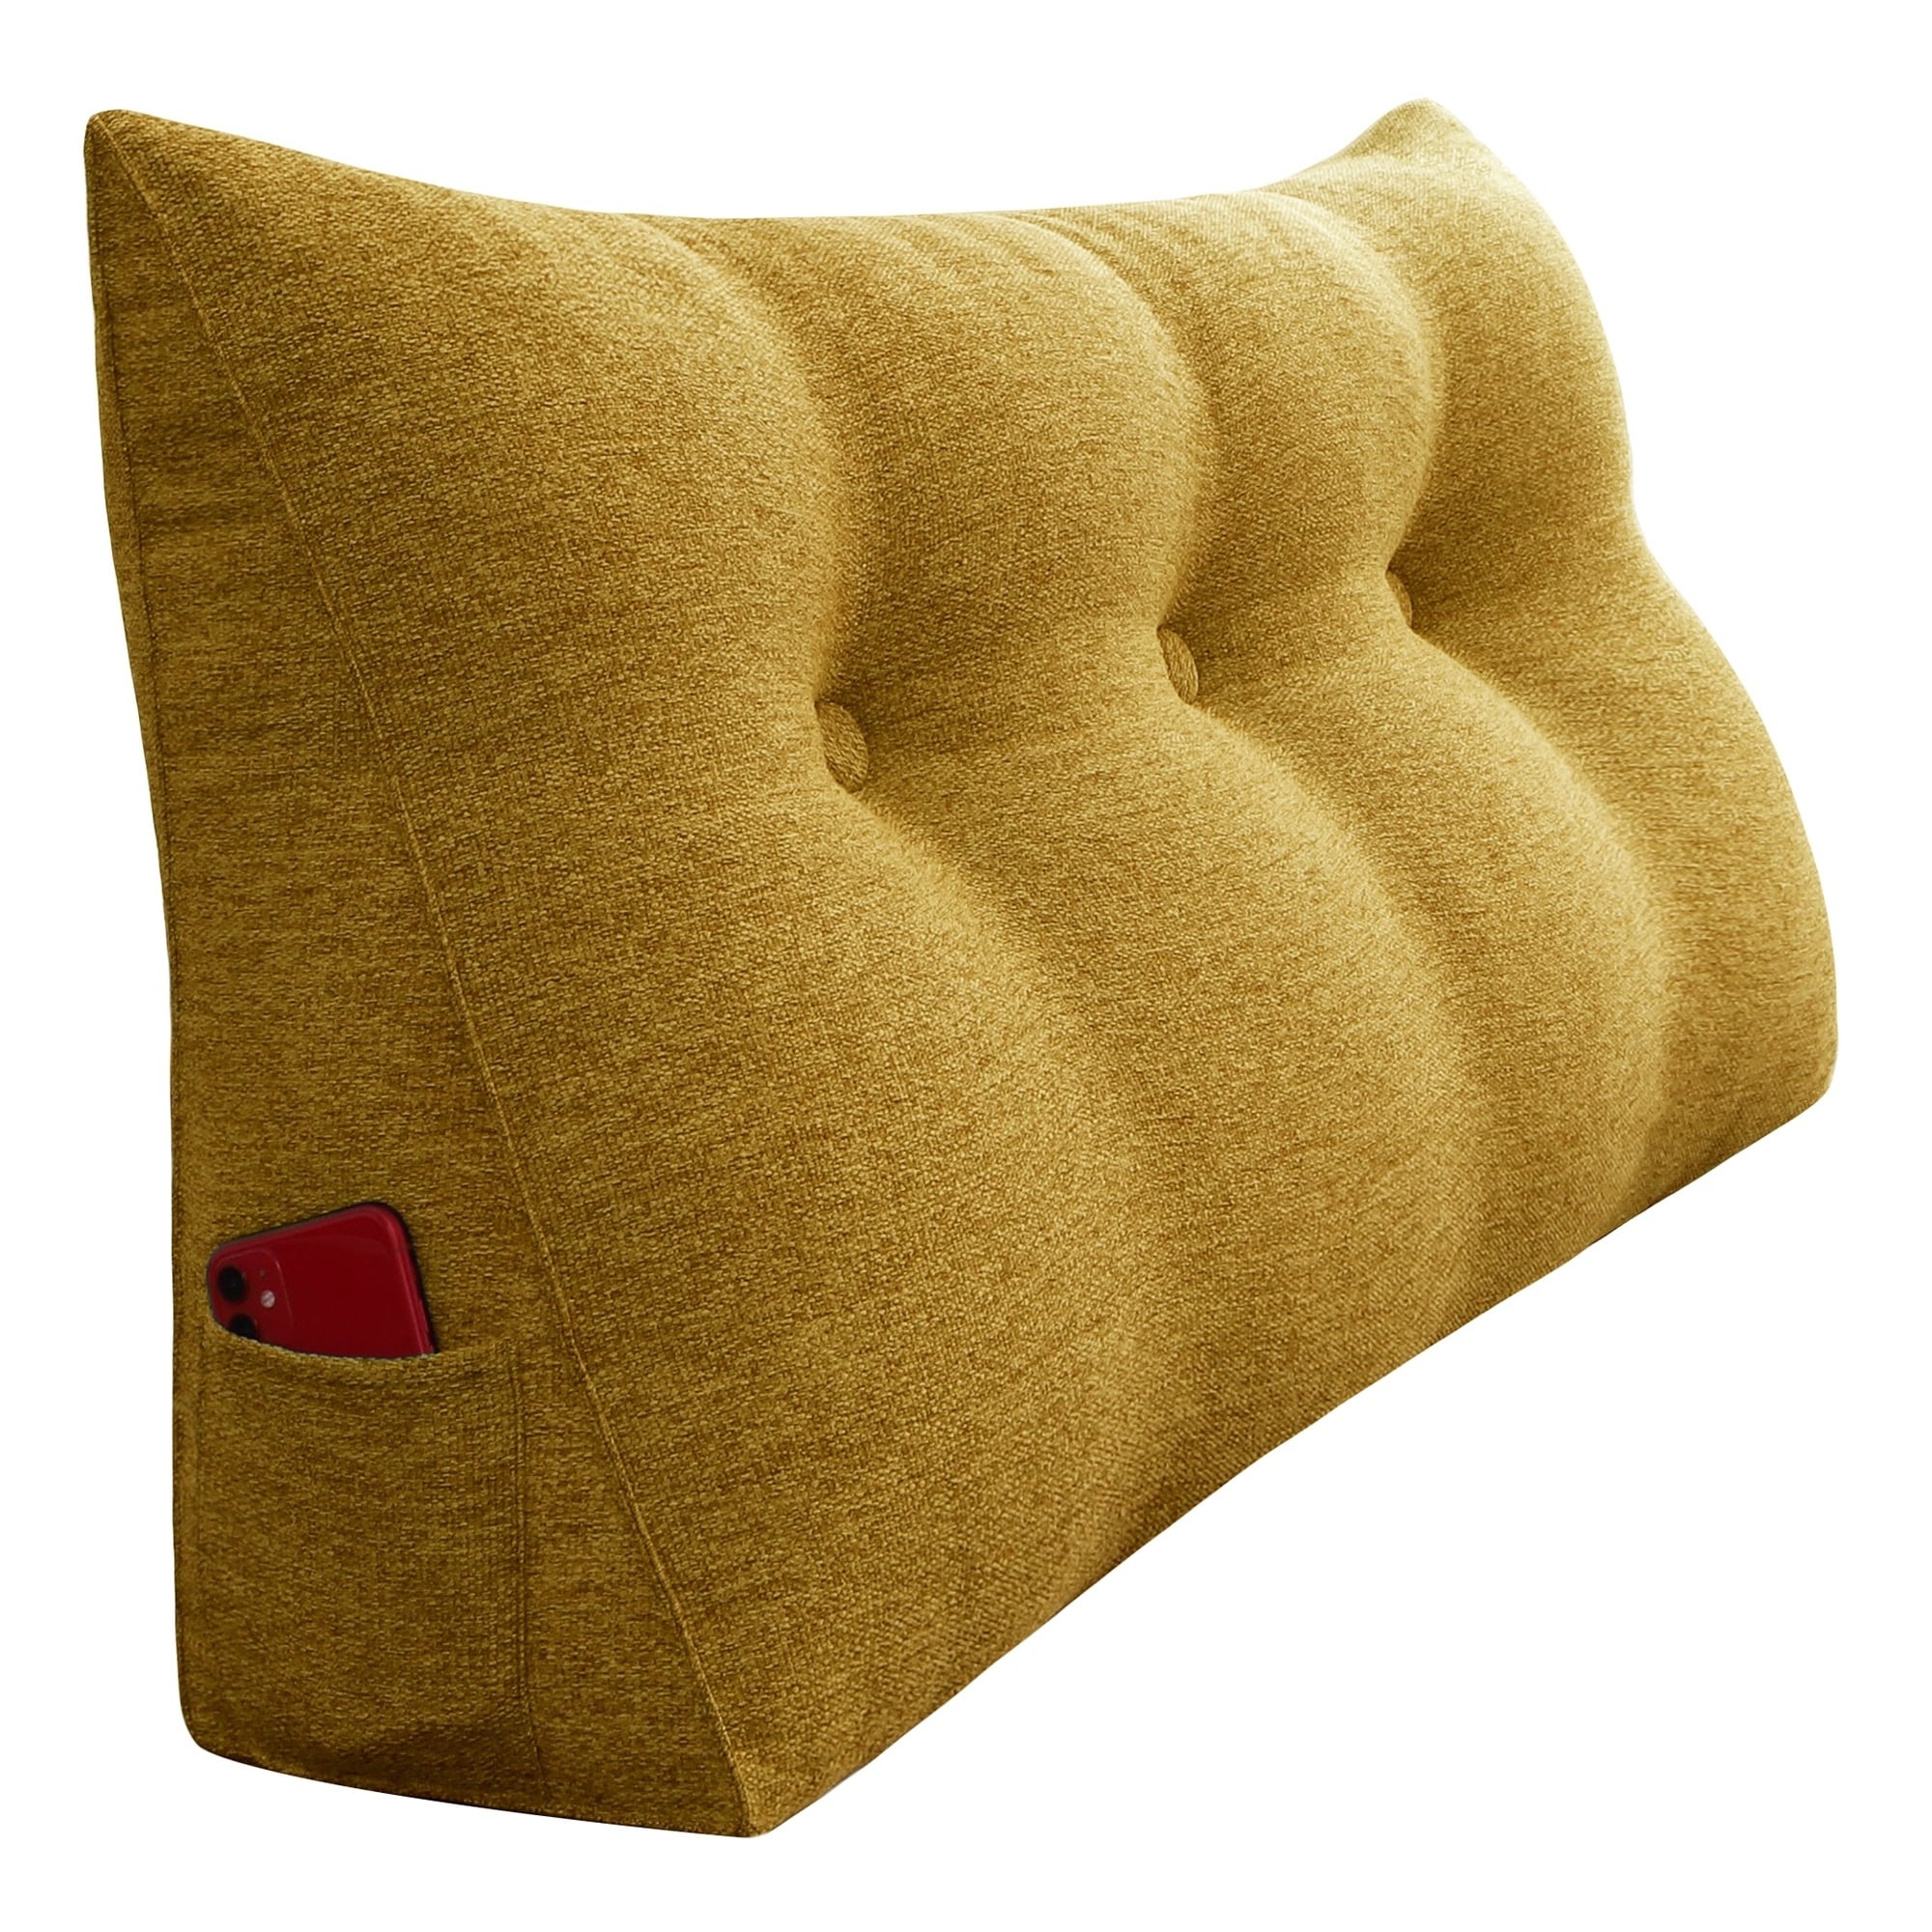 triangular bolster pillows